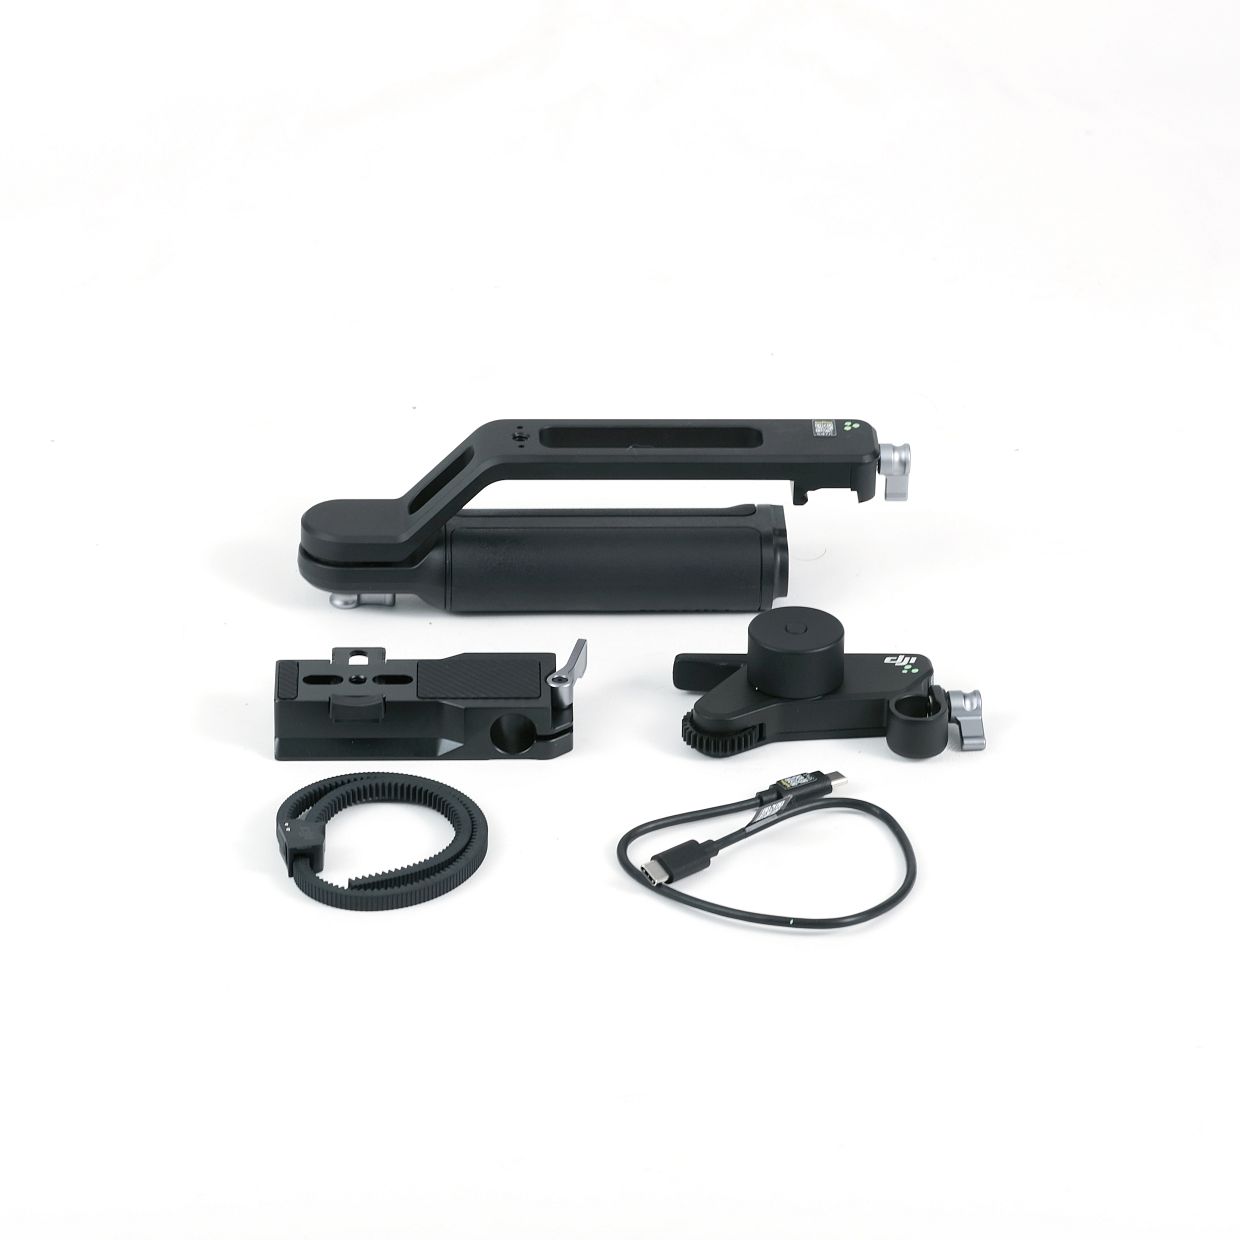 DJI RS4 combo kit (Focus motor kit, Brifcase handle)